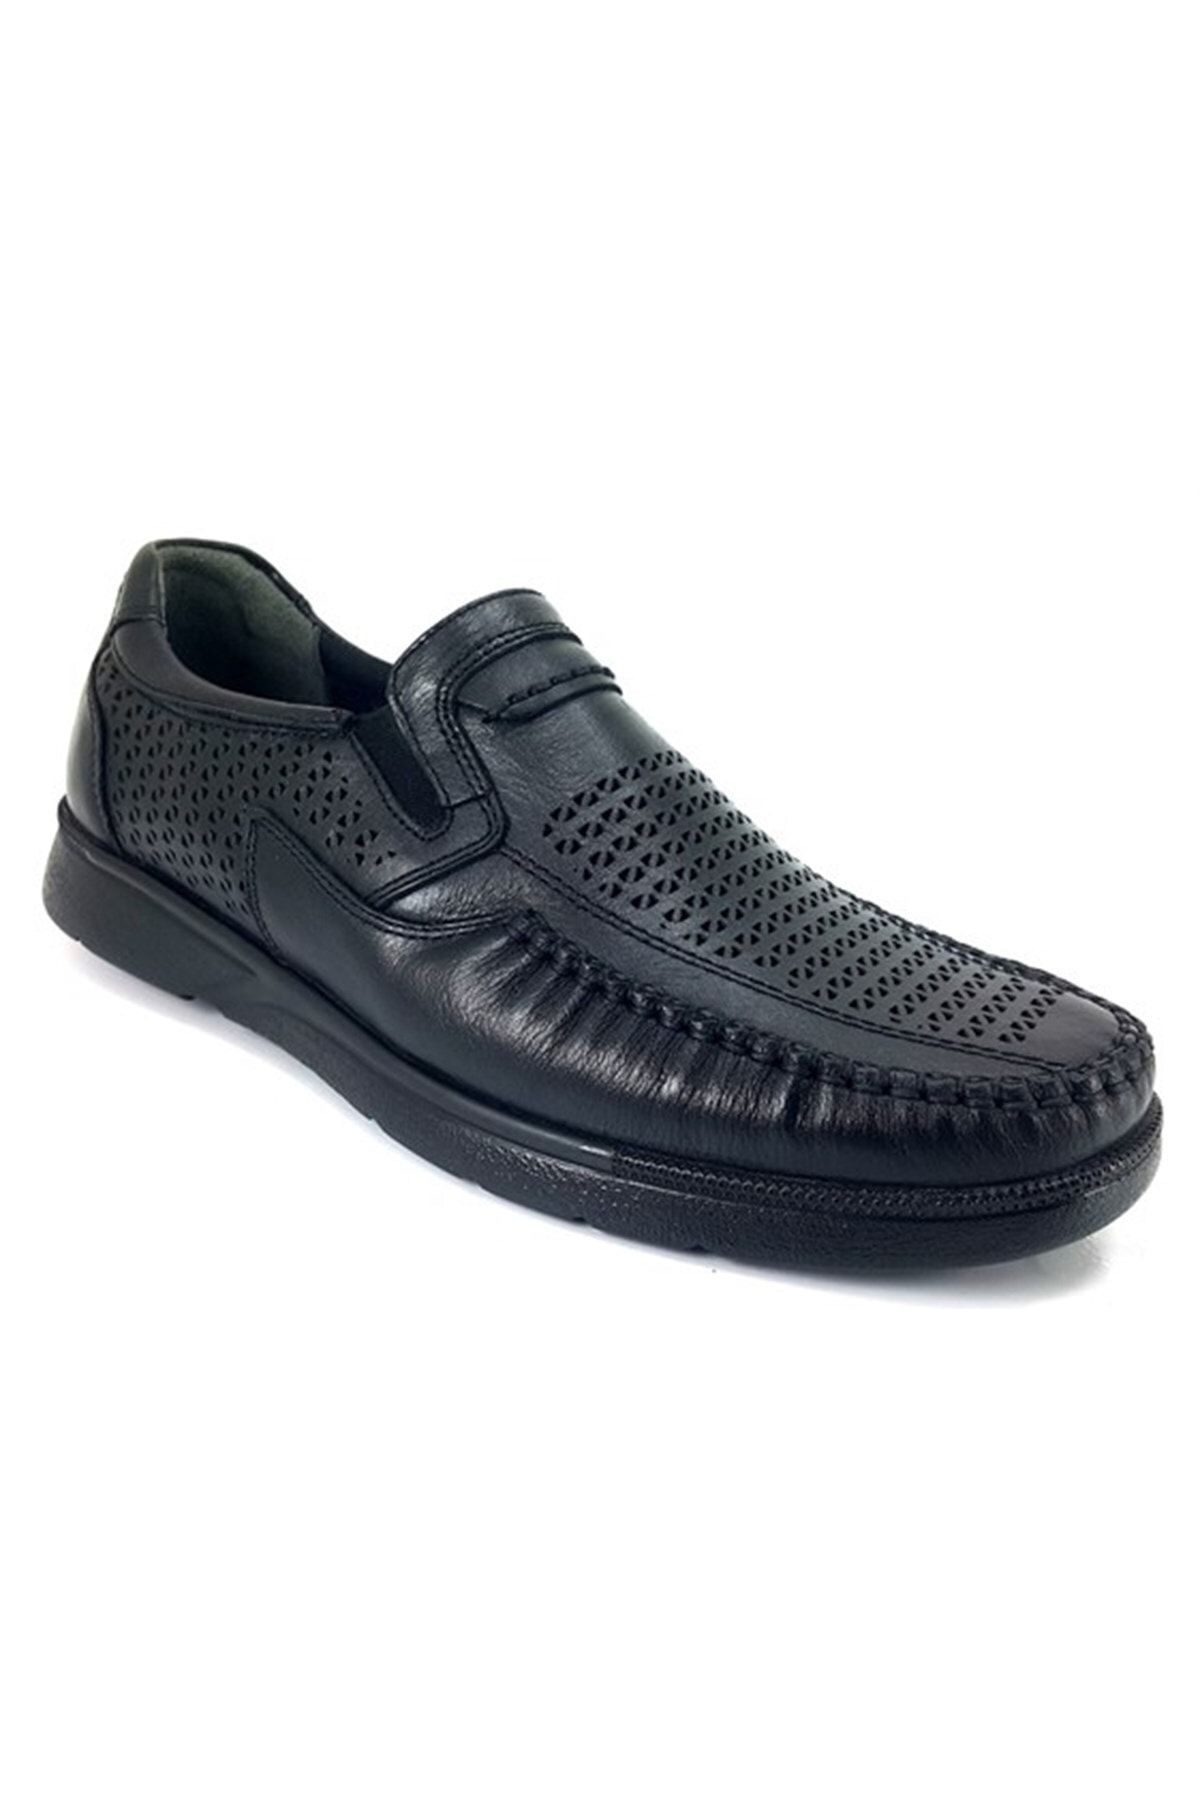 Forelli Helmut Erkek Siyah Deri Comfort Ayakkabı-siyah